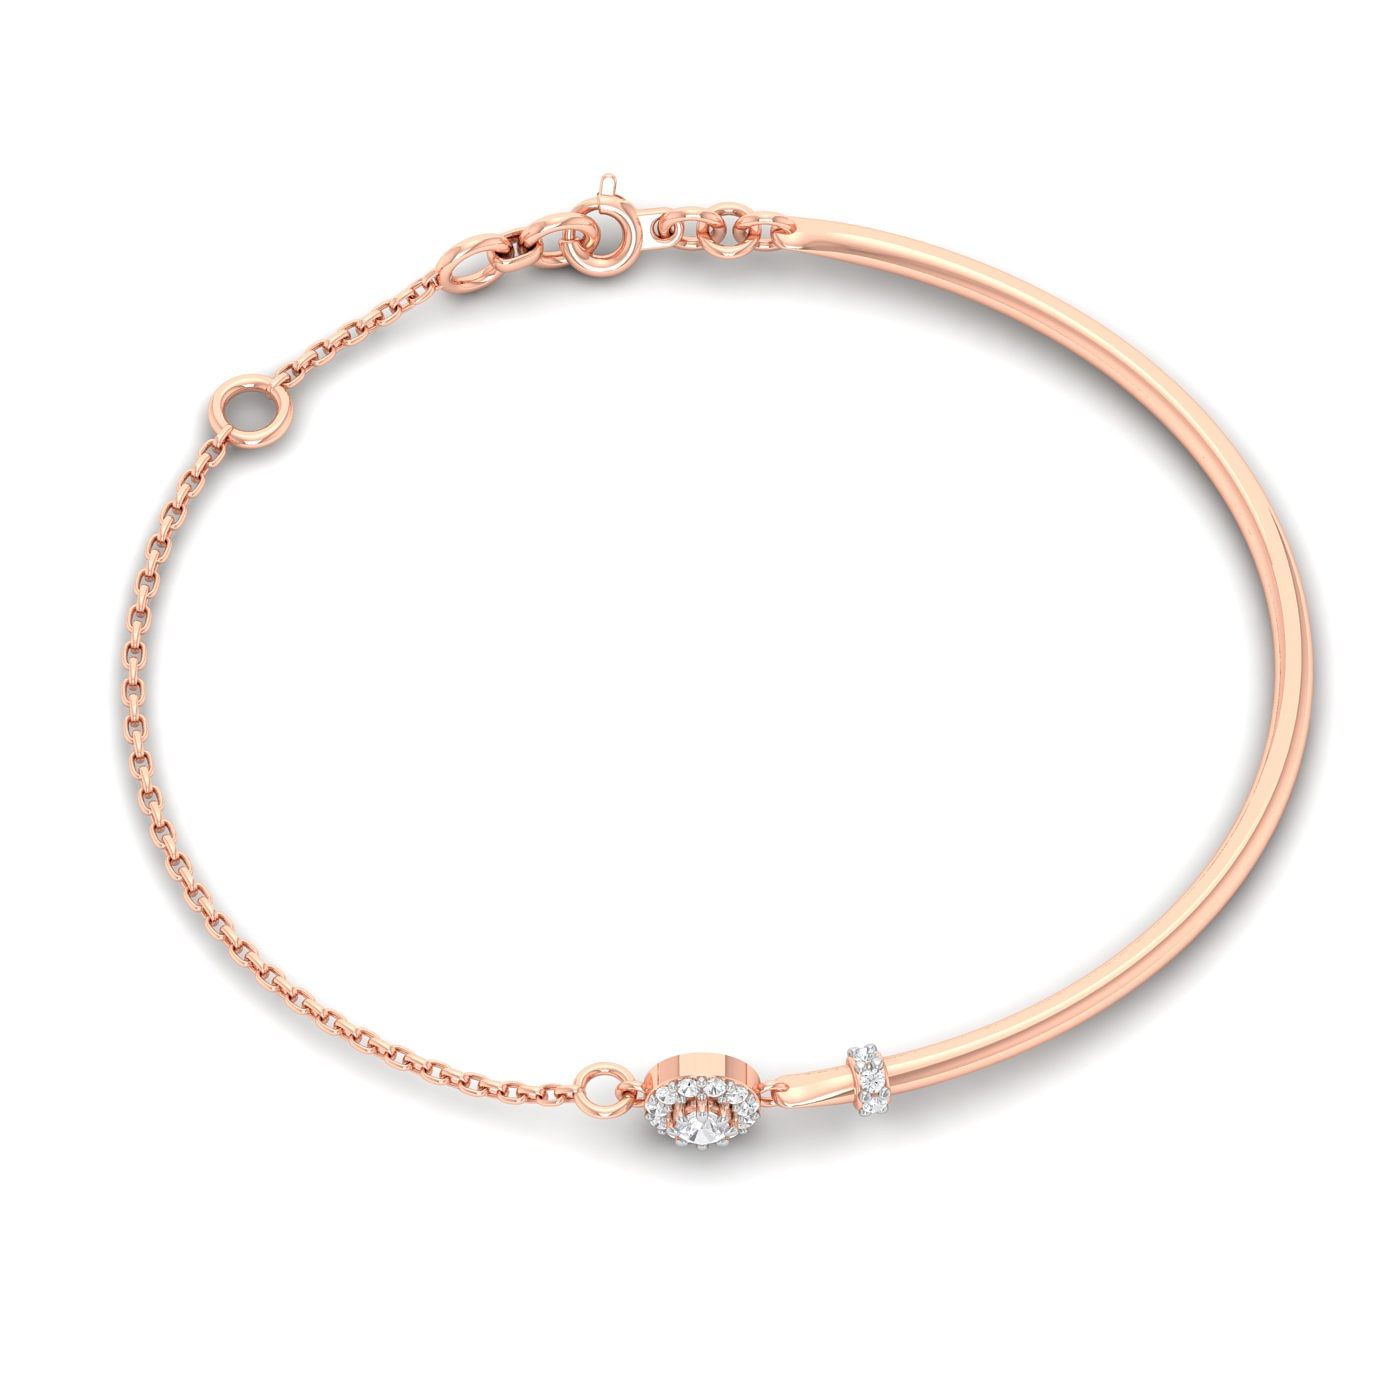 Rose Gold Damini Diamond Bracelet For Engagement Gift